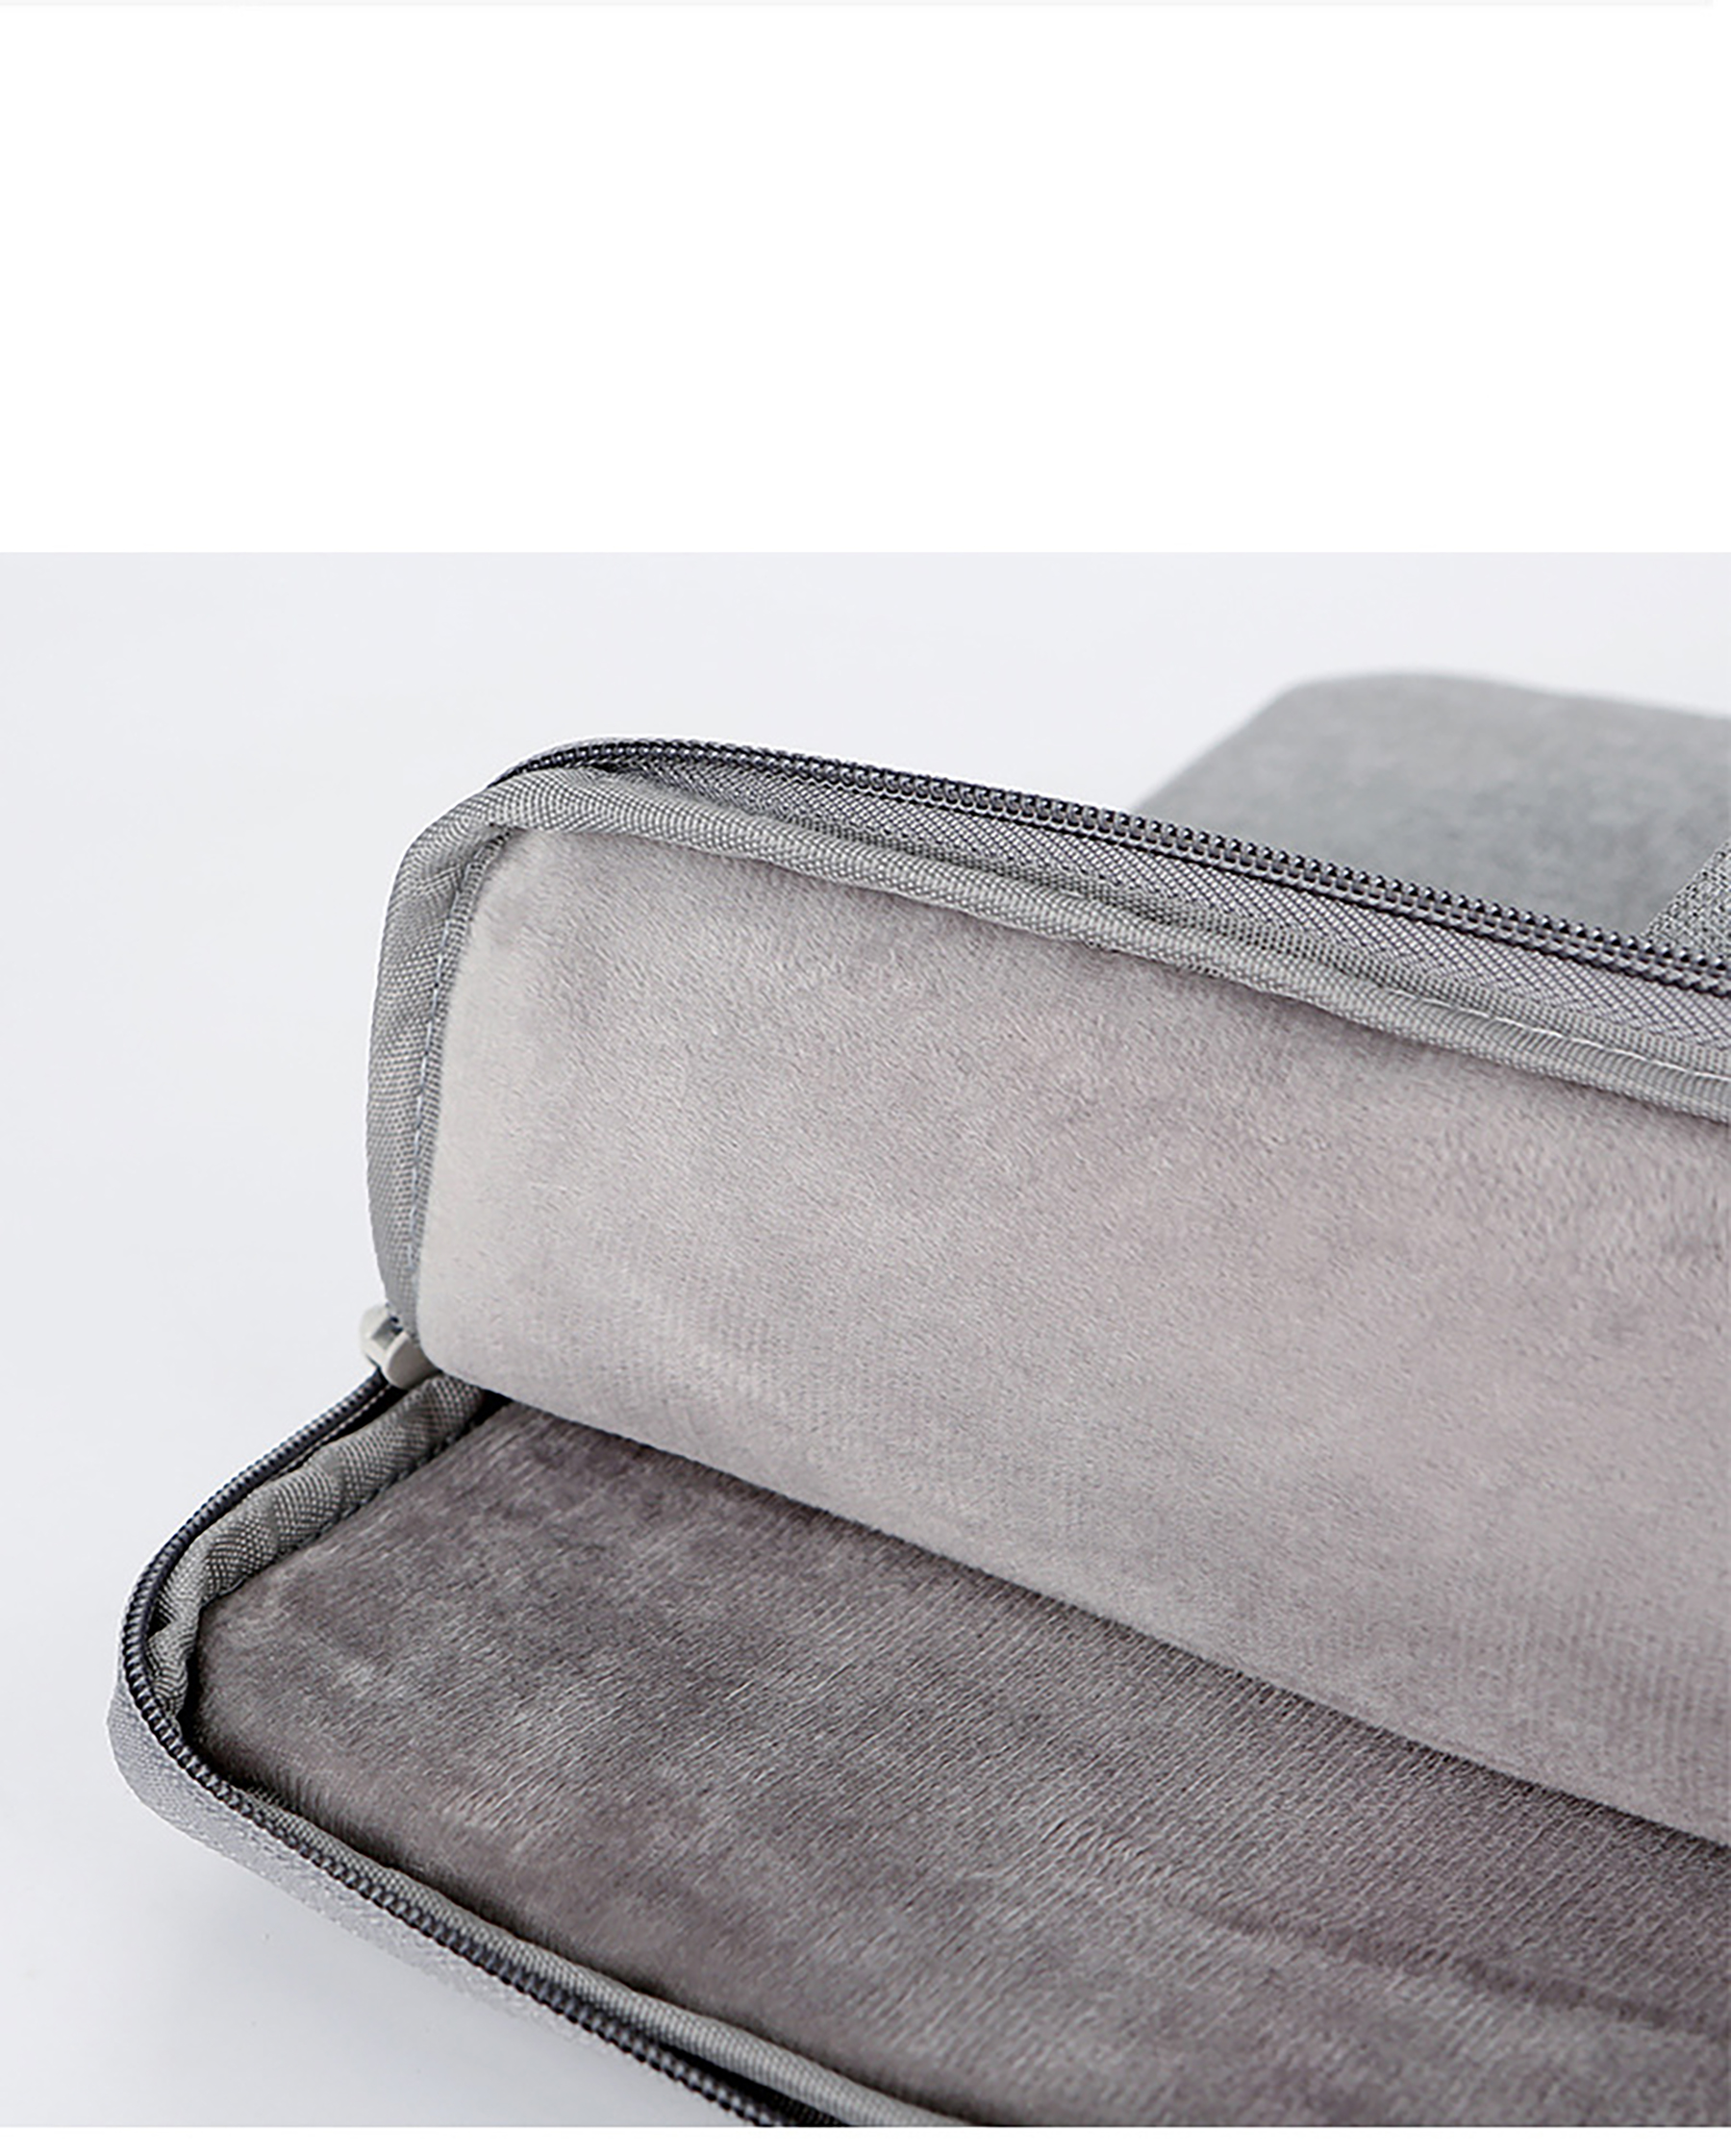 15.6 inch Laptop Shoulder Bag with Adjustable Shoulder Strap